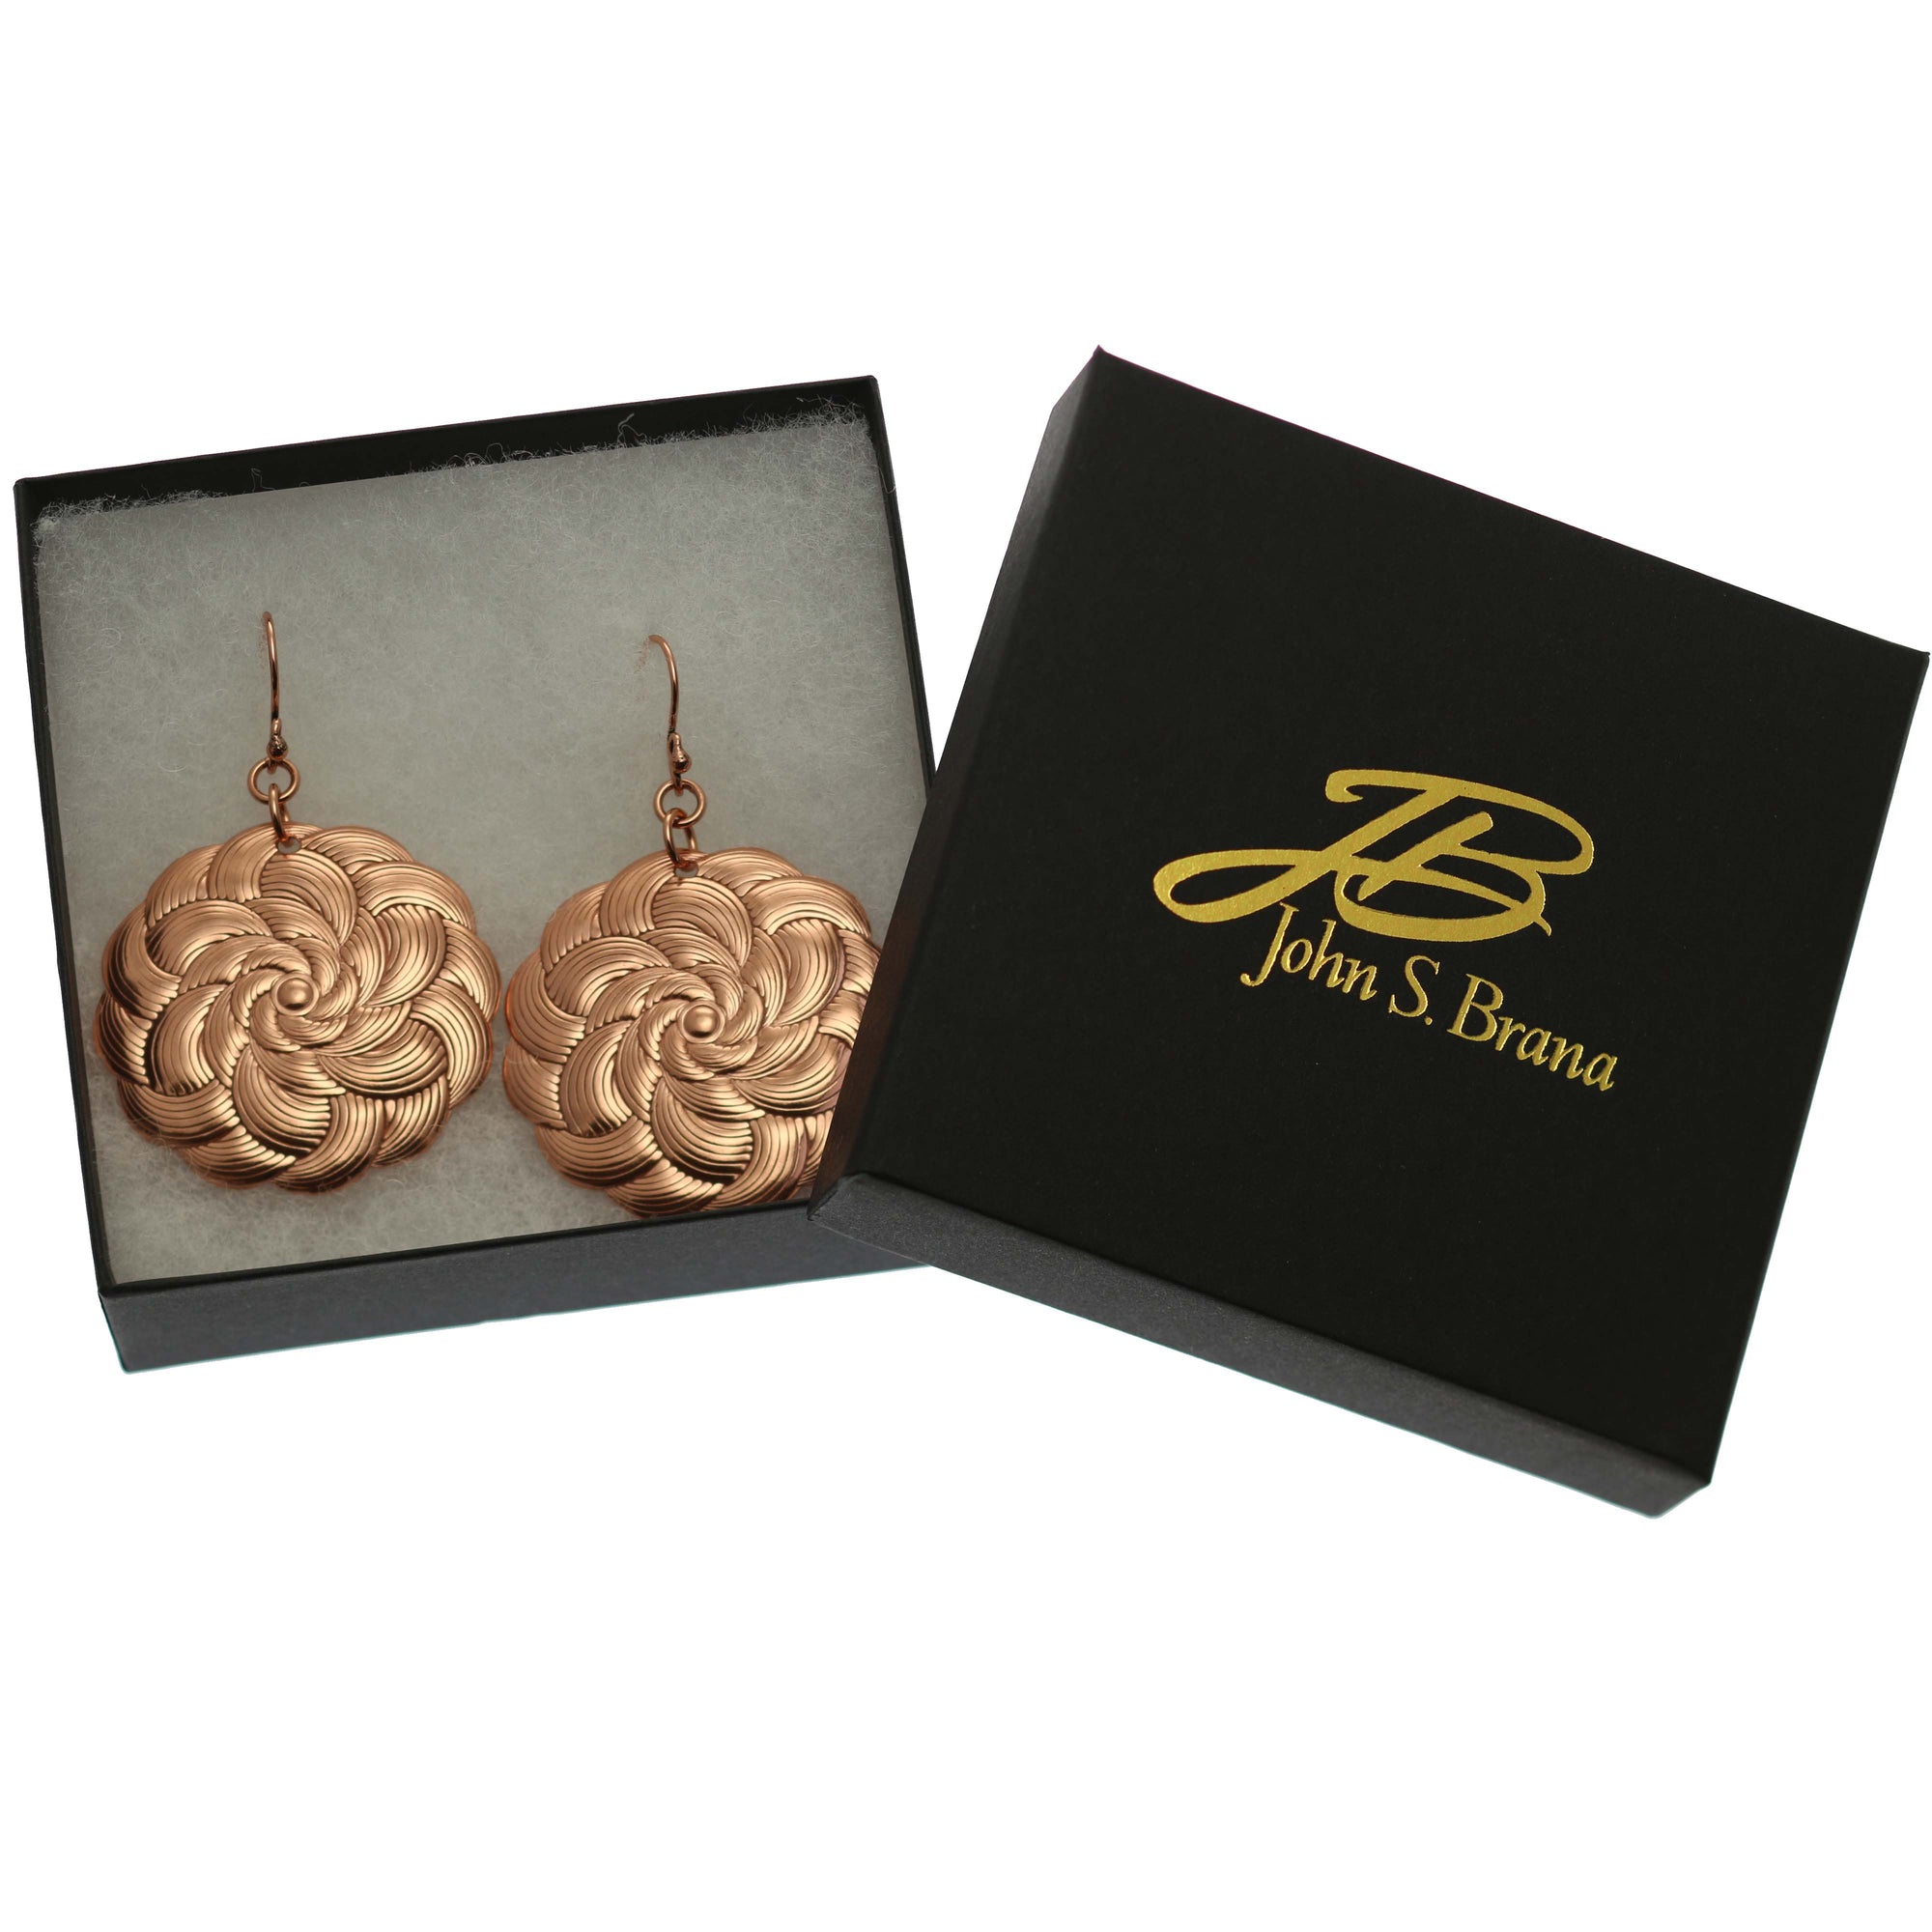 Copper Mandla Disc Earrings in a Black Gift Box